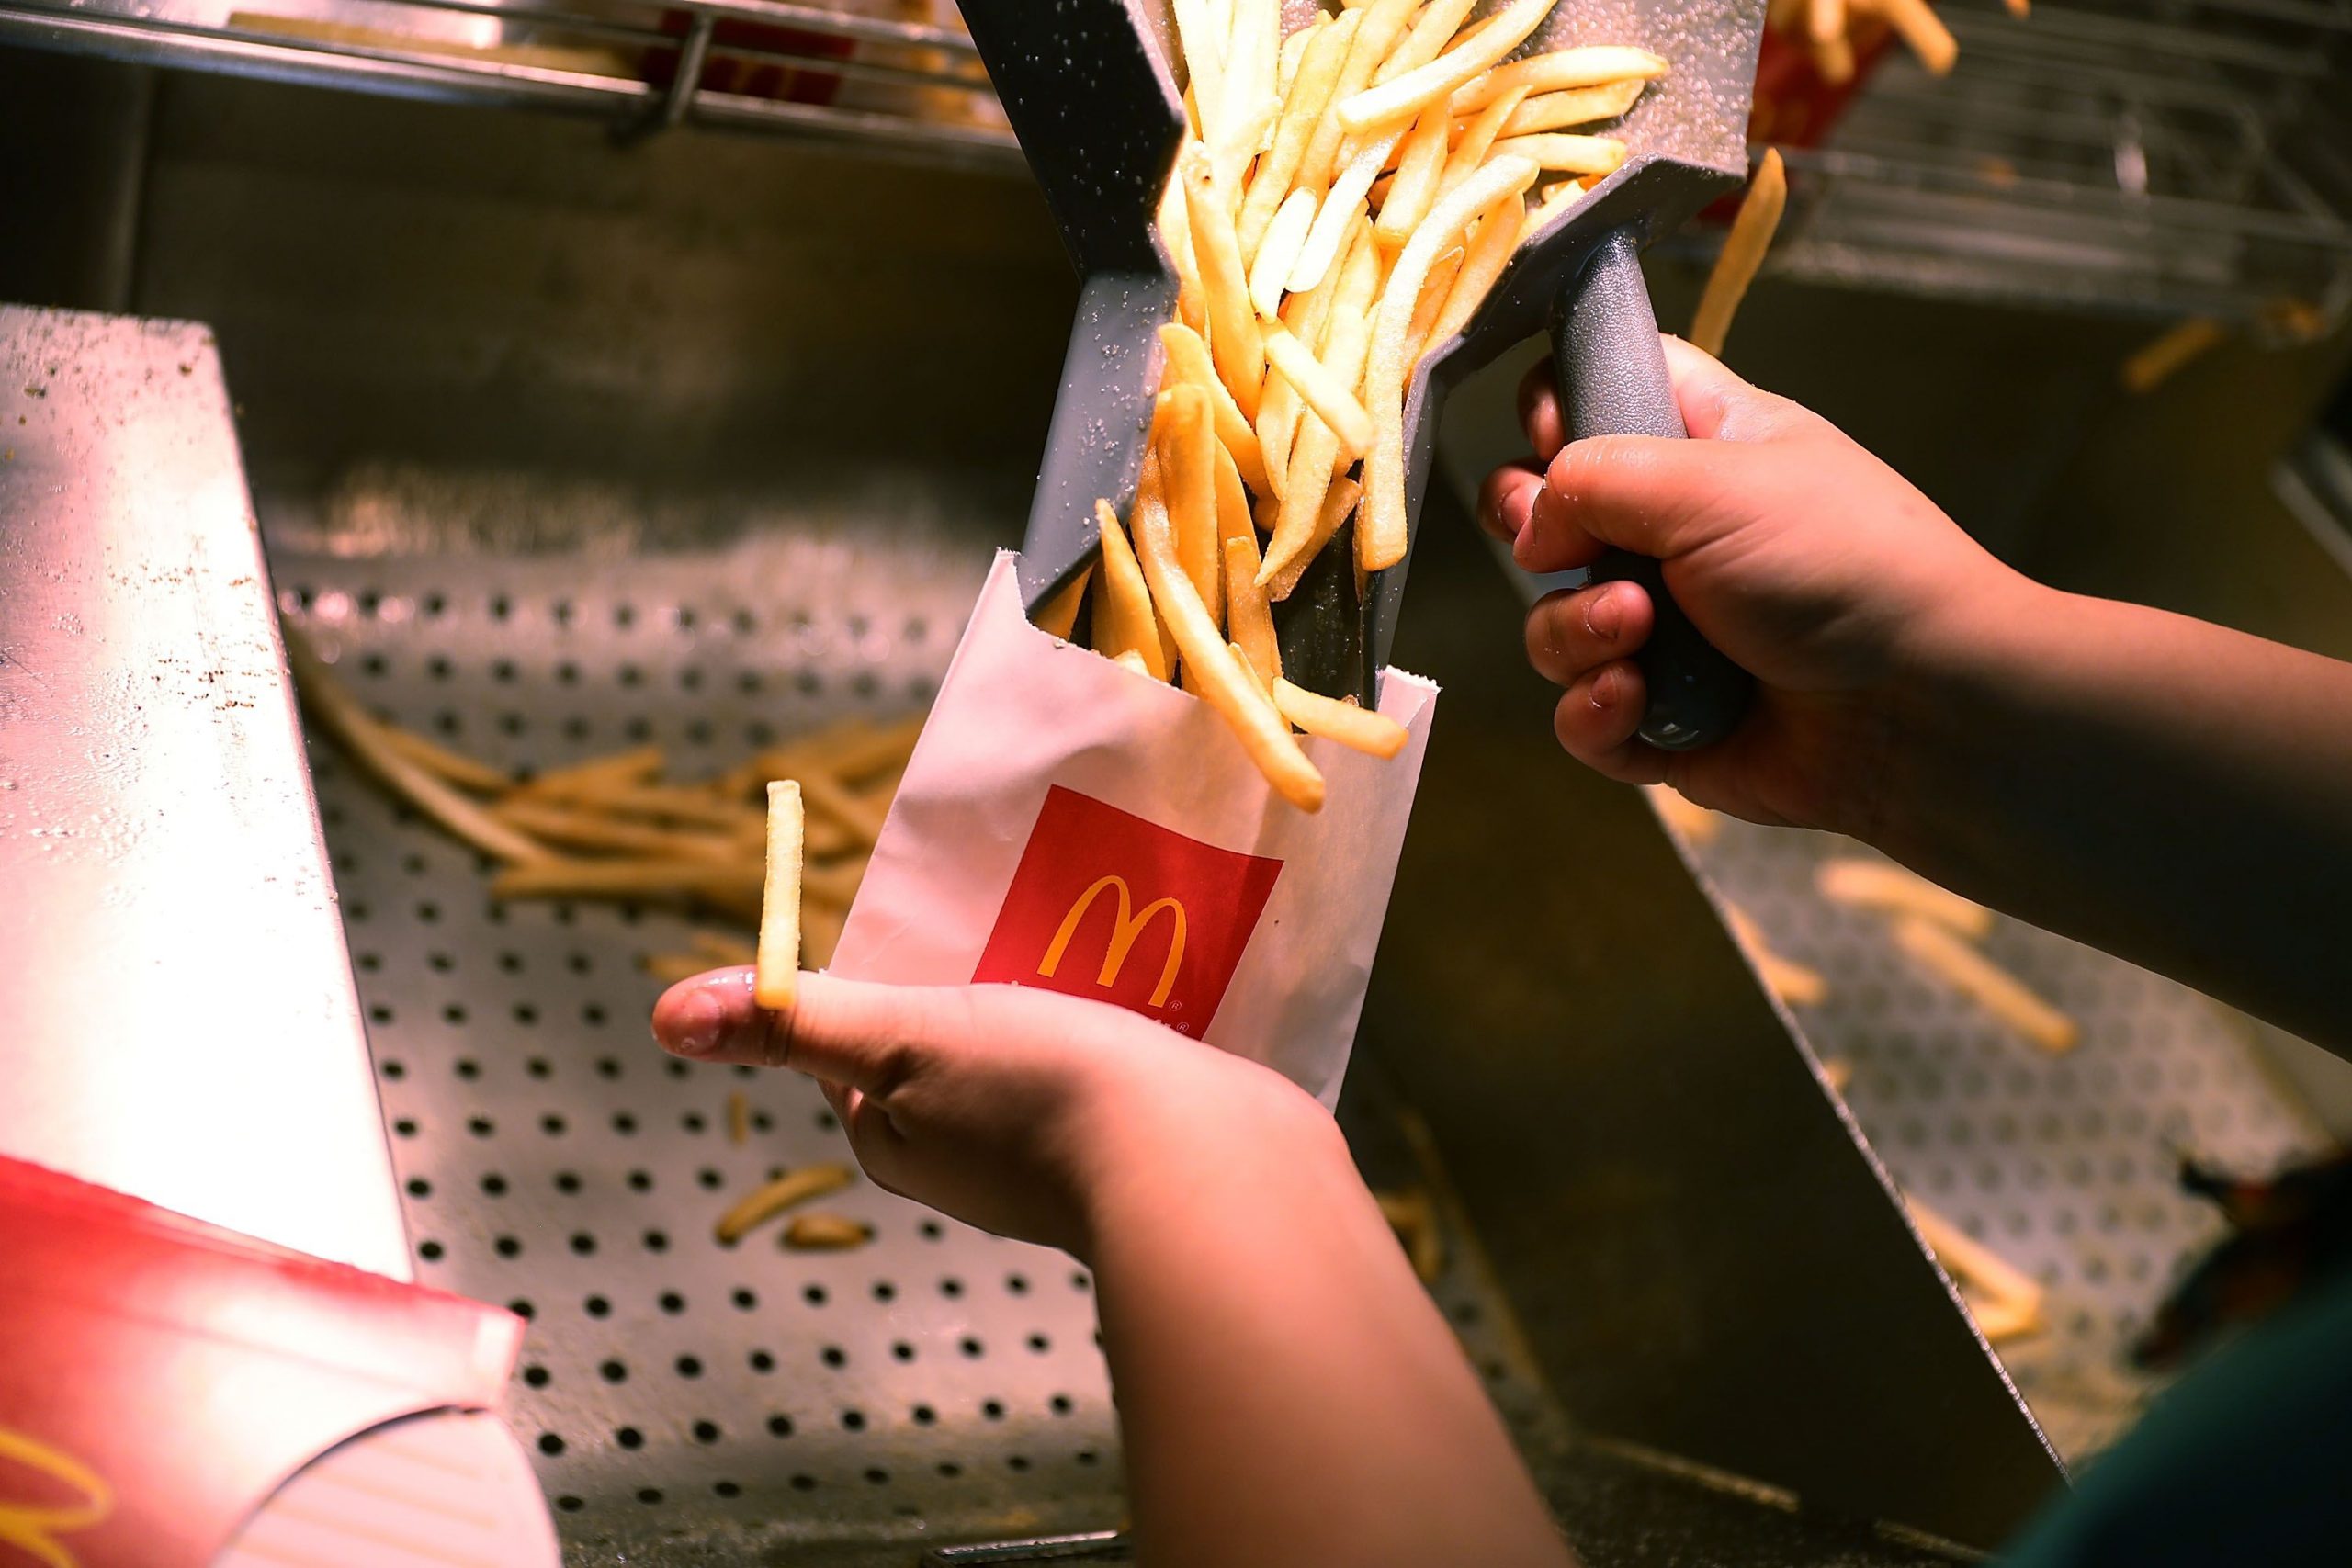 麥當勞地區限定的 sharing size 薯條引發討論